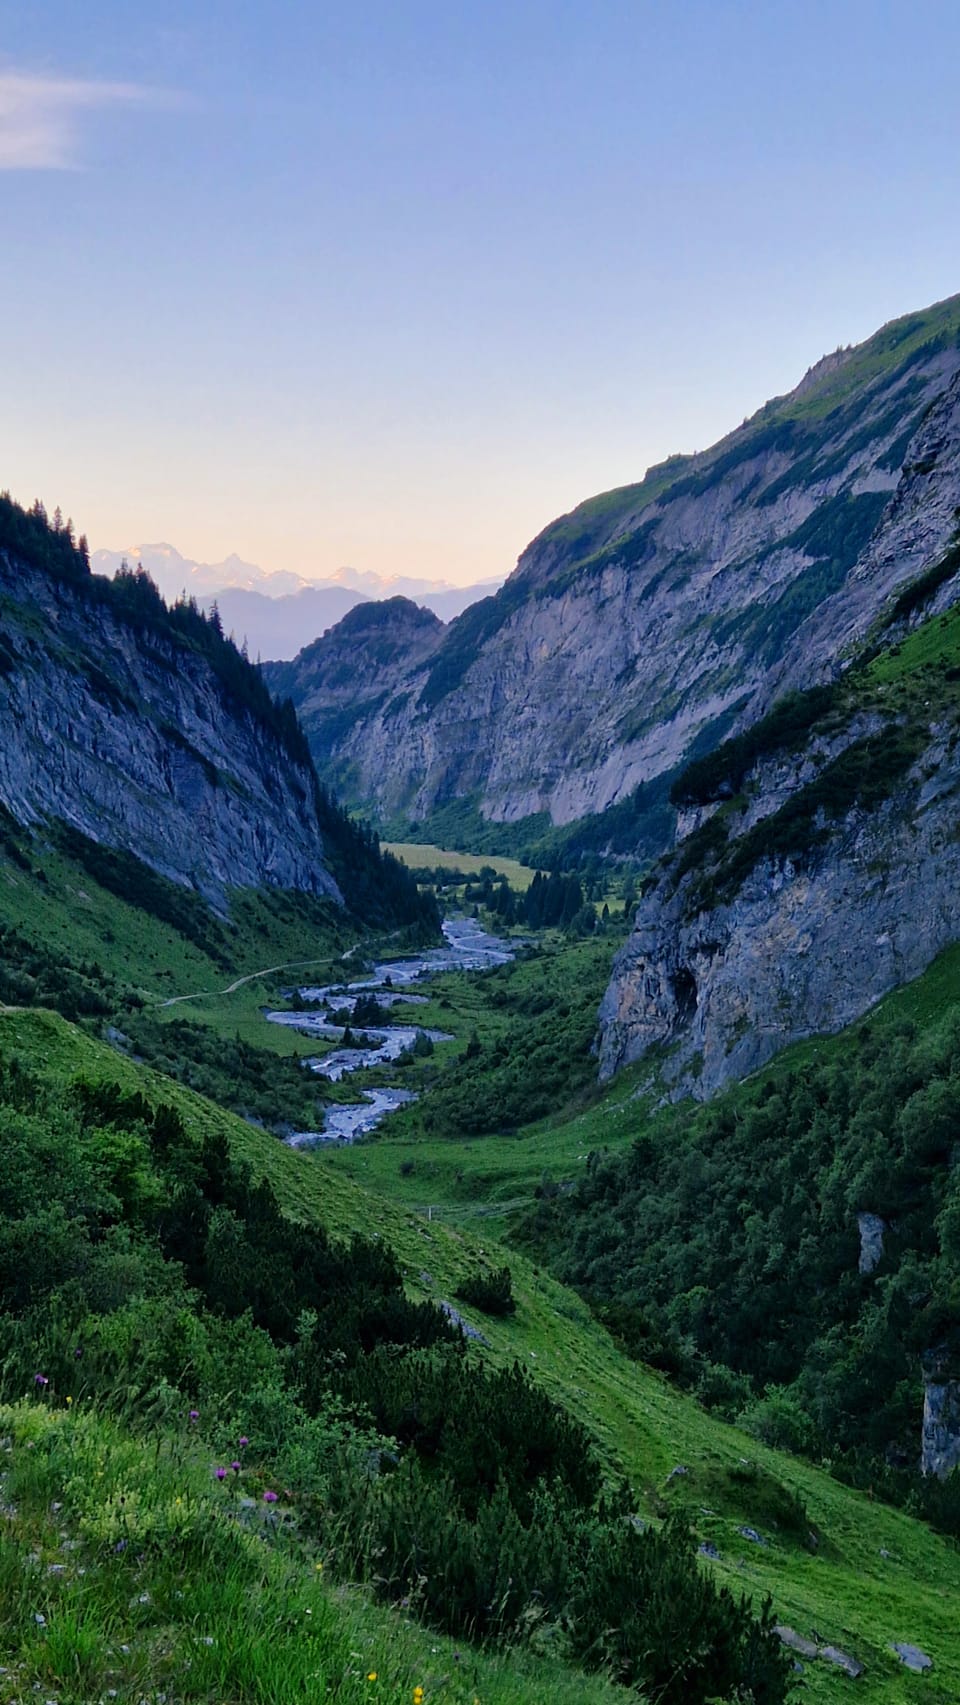 Blick auf grünes Tal mit Fluss und hohen Bergen.